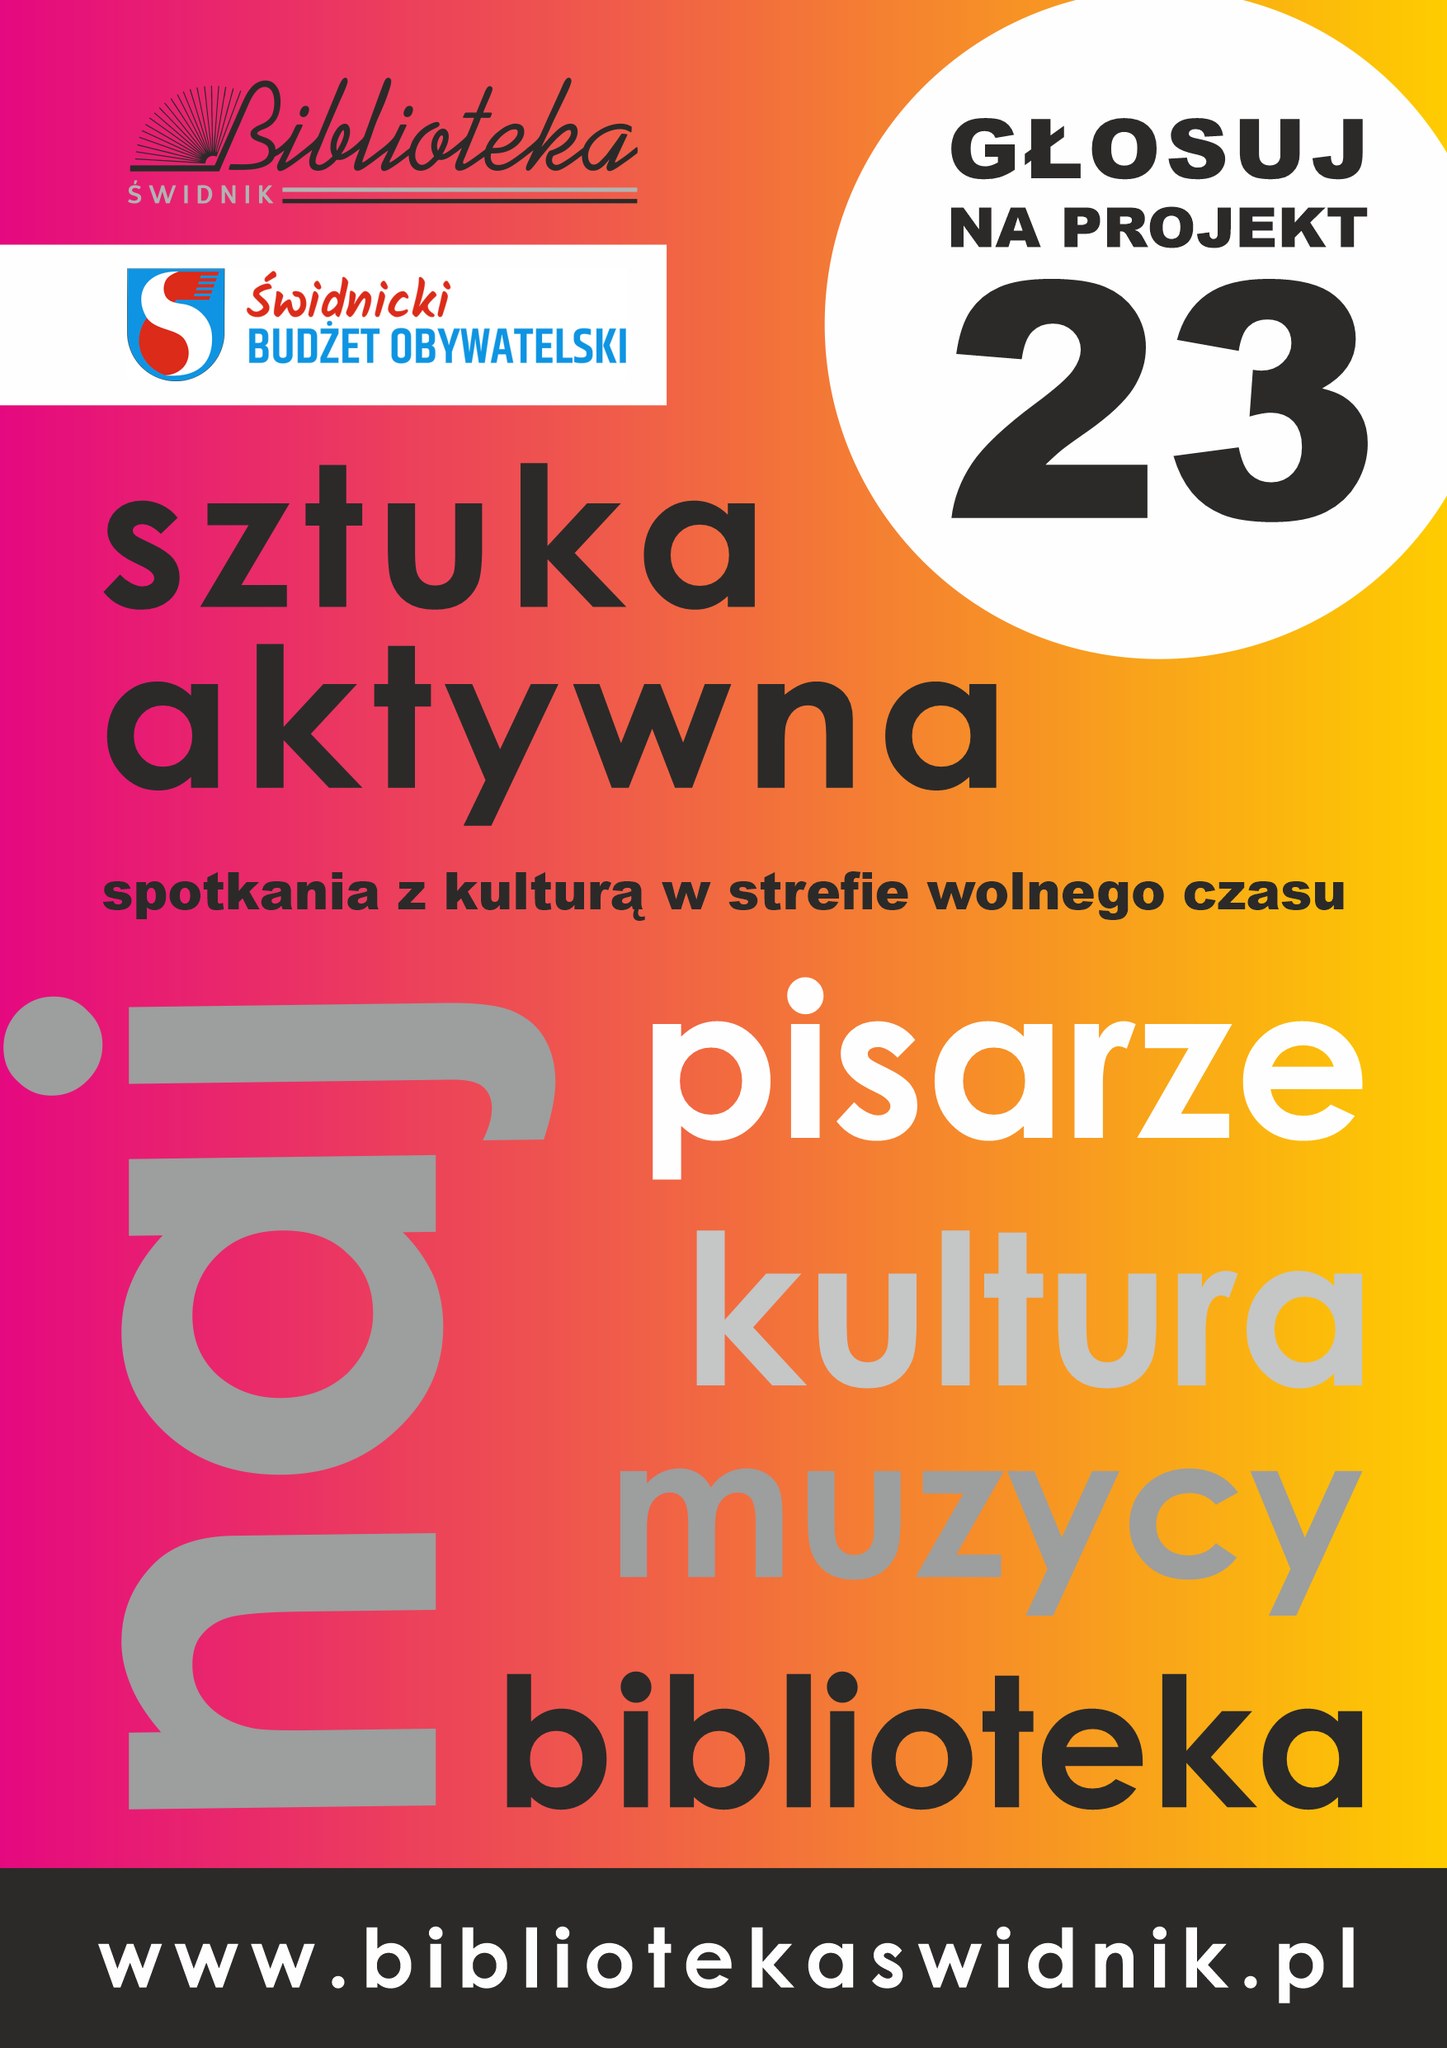 plakat z logiem biblioteki i Świdnickiego Budżetu Obywatelskiego z napisem Sztuka aktywna-głosuj na projekt nr 23